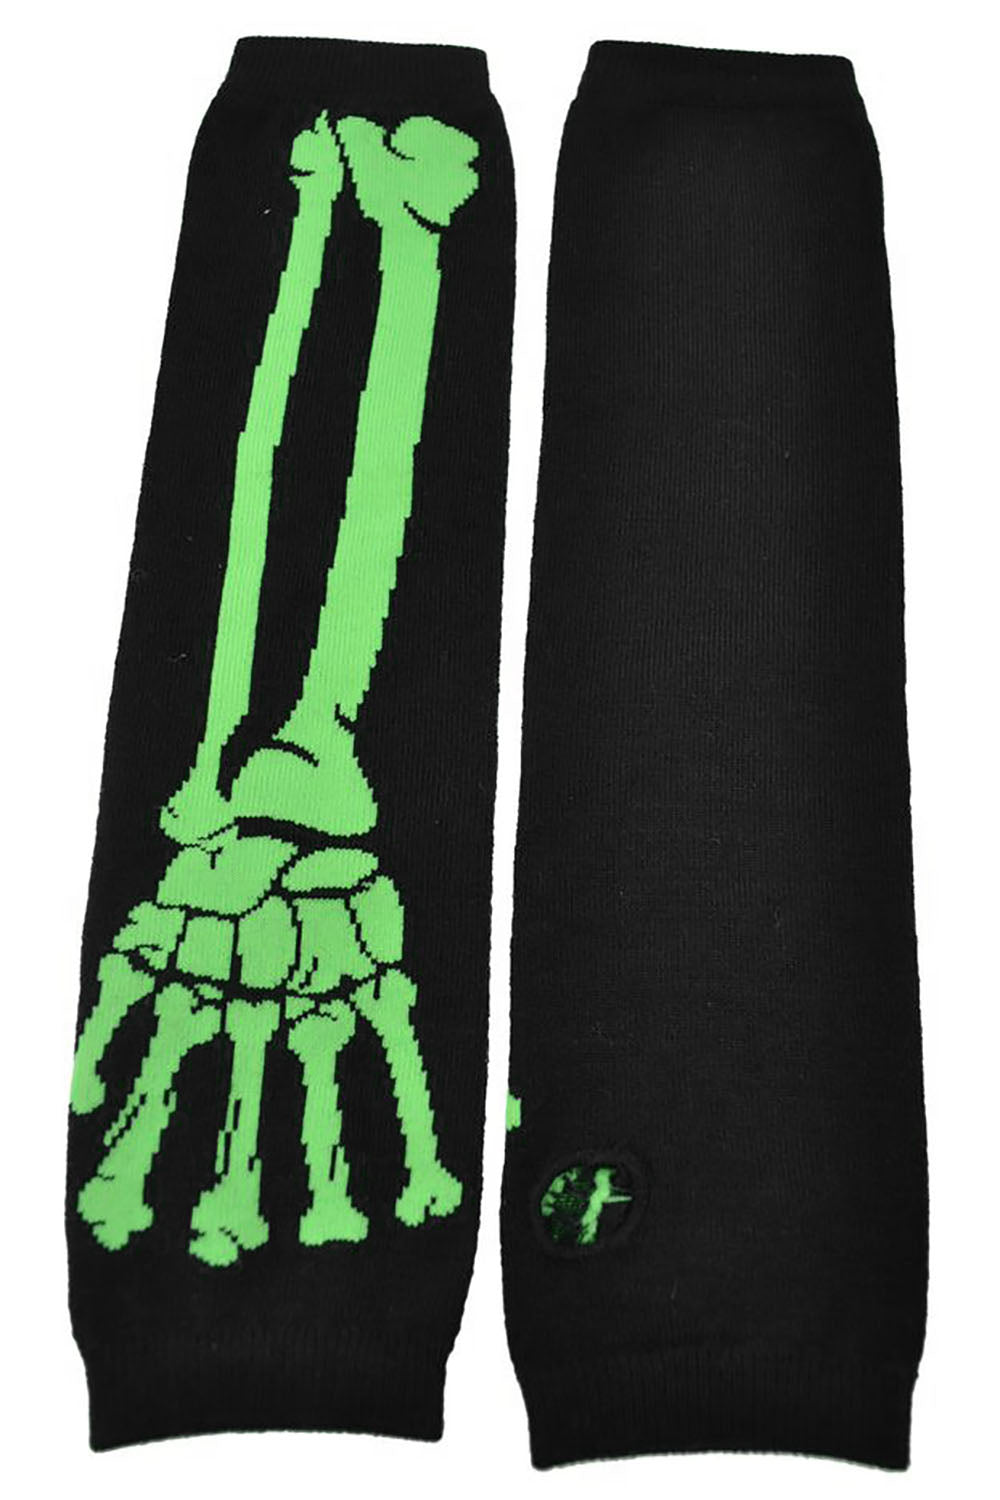 Poizen Bone Arm Warmers [Black/Lime Green]